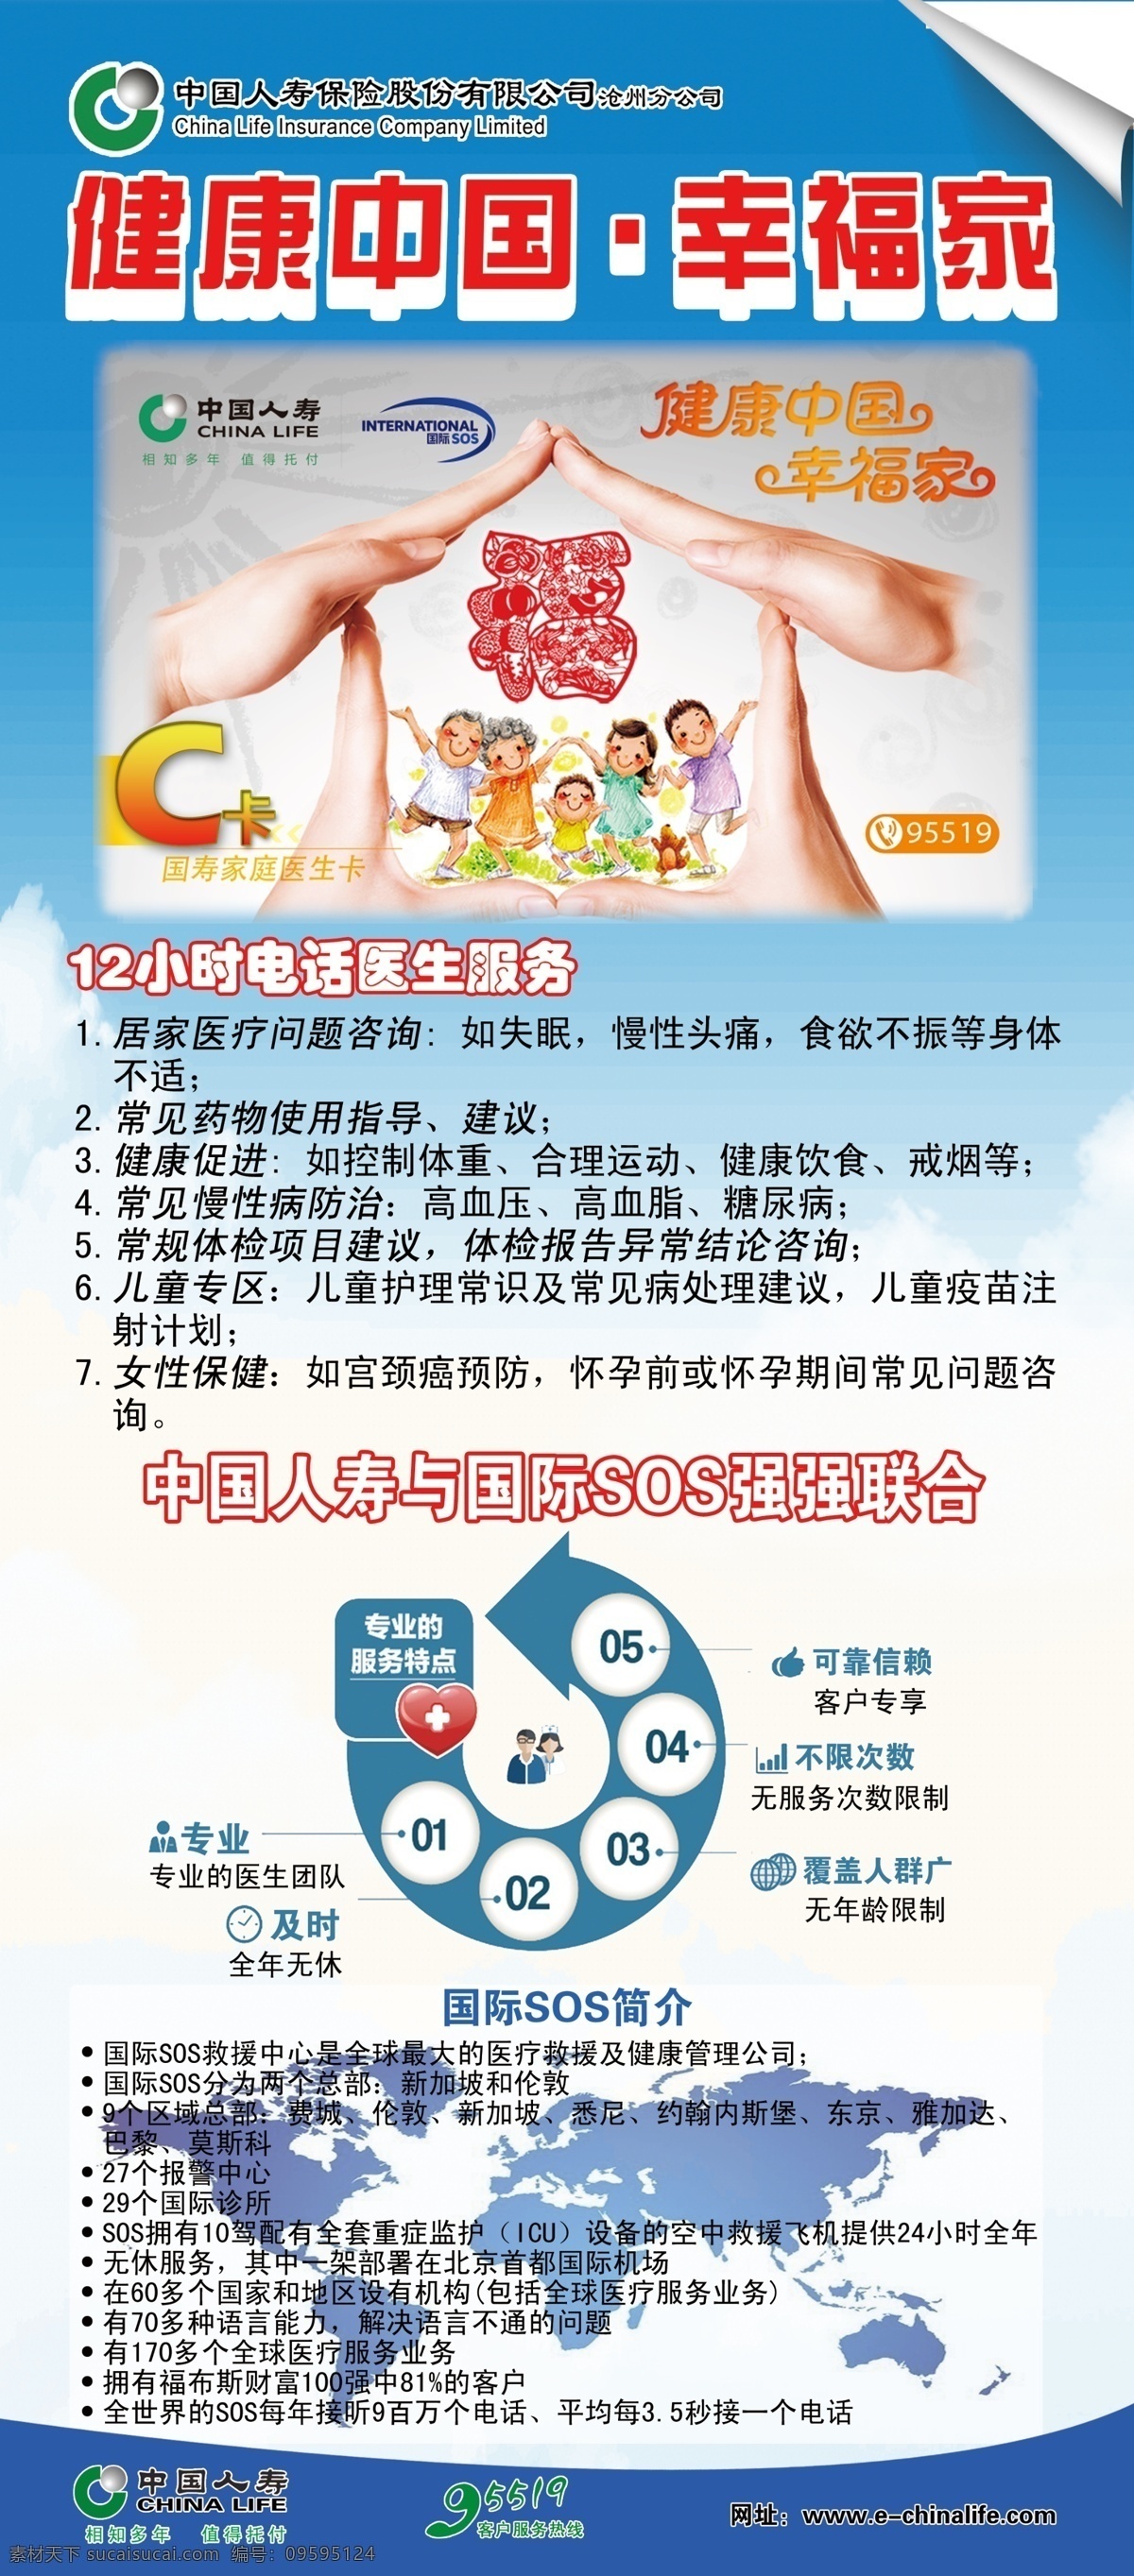 中国 人寿 健康 幸福 家 展架 中国人寿 幸福家 国际 sos 联合